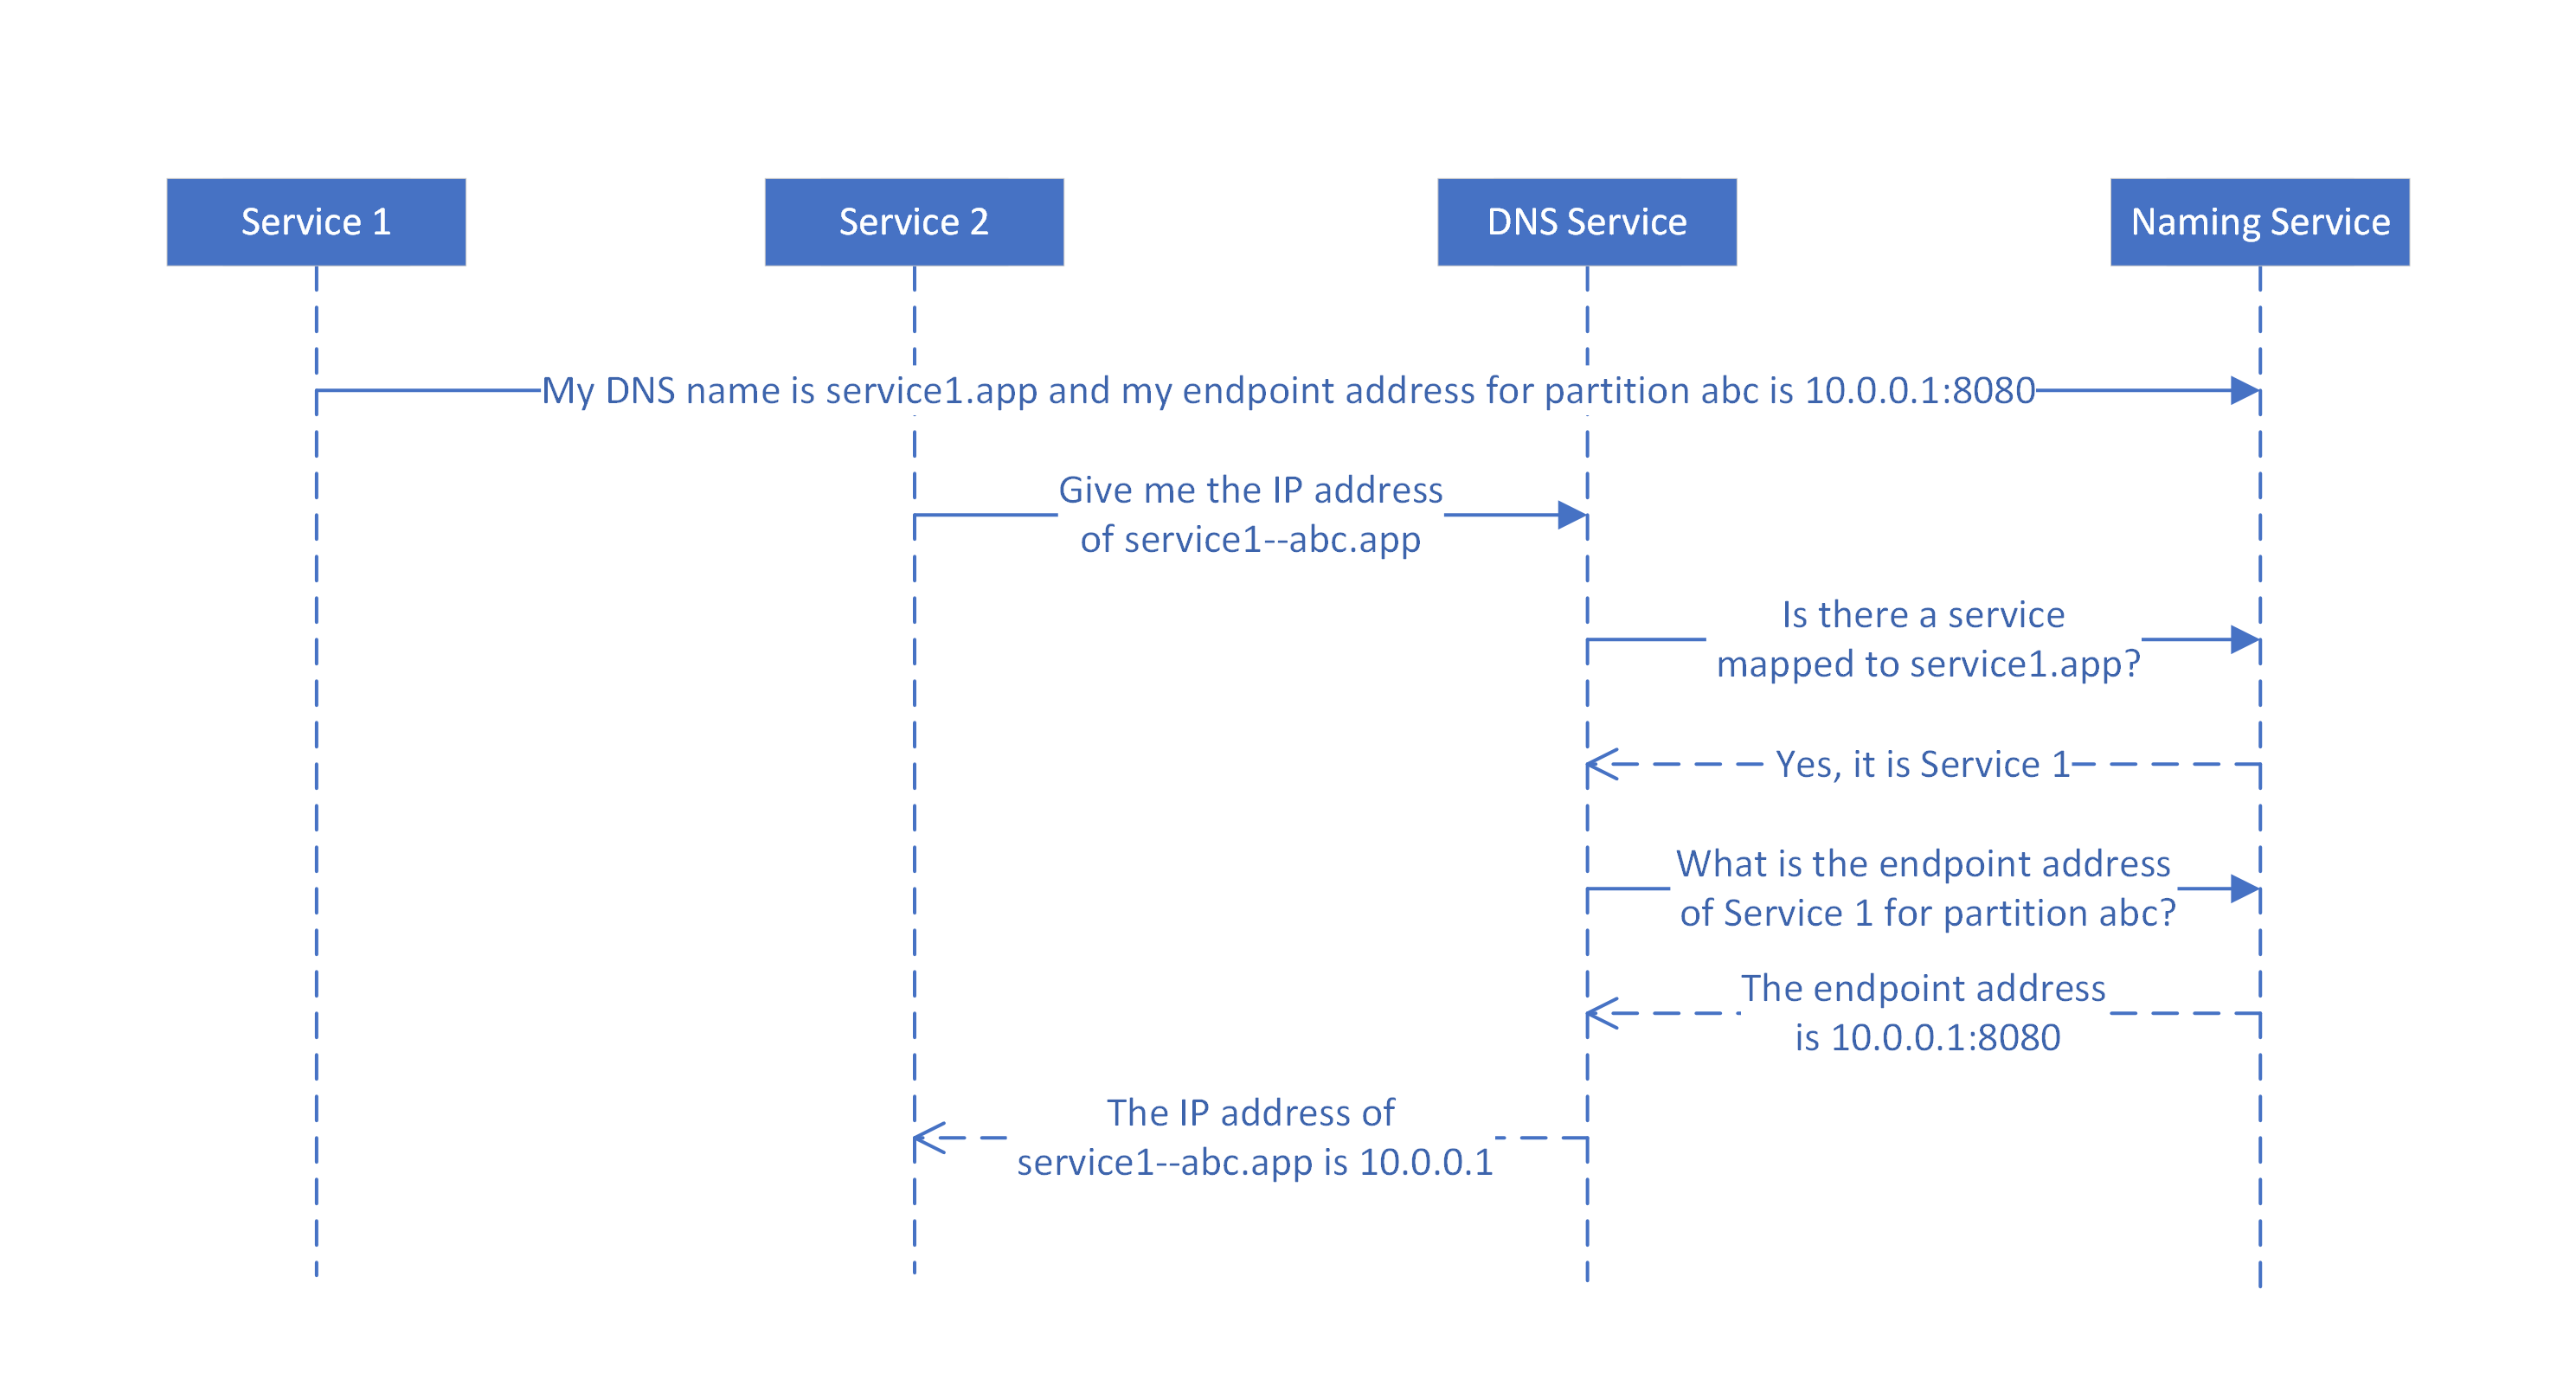 رسم تخطيطي يوضح كيفية تعيين أسماء DNS إلى أسماء الخدمات بواسطة خدمة DNS للخدمات ذات الحالة المقسمة.